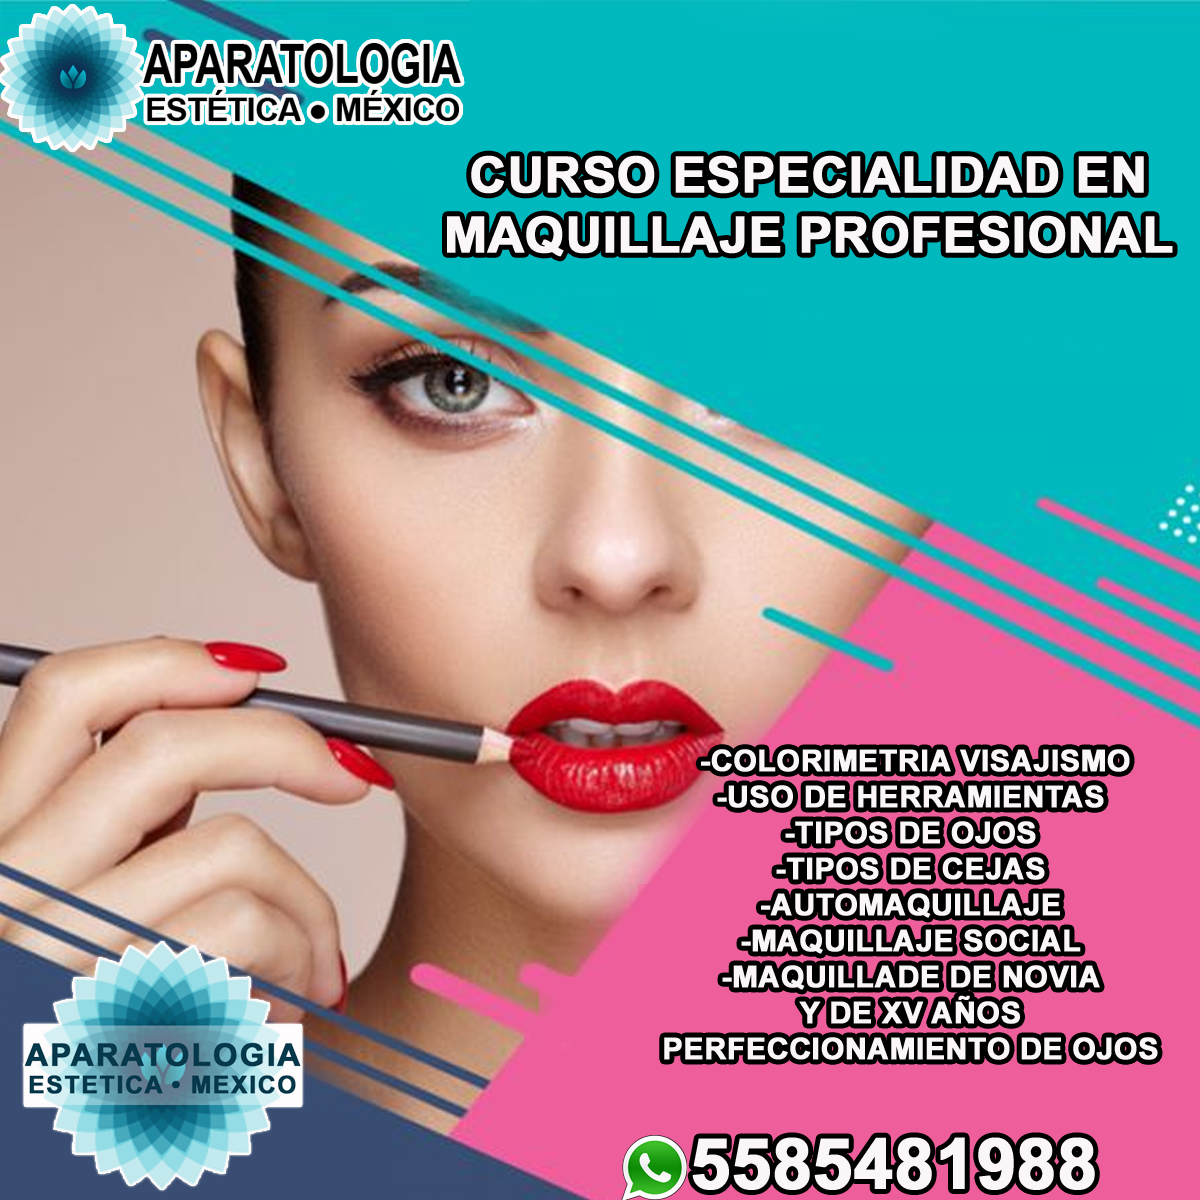 Curso especialidad en el maquillaje profesional - Aparatologia Estética  México